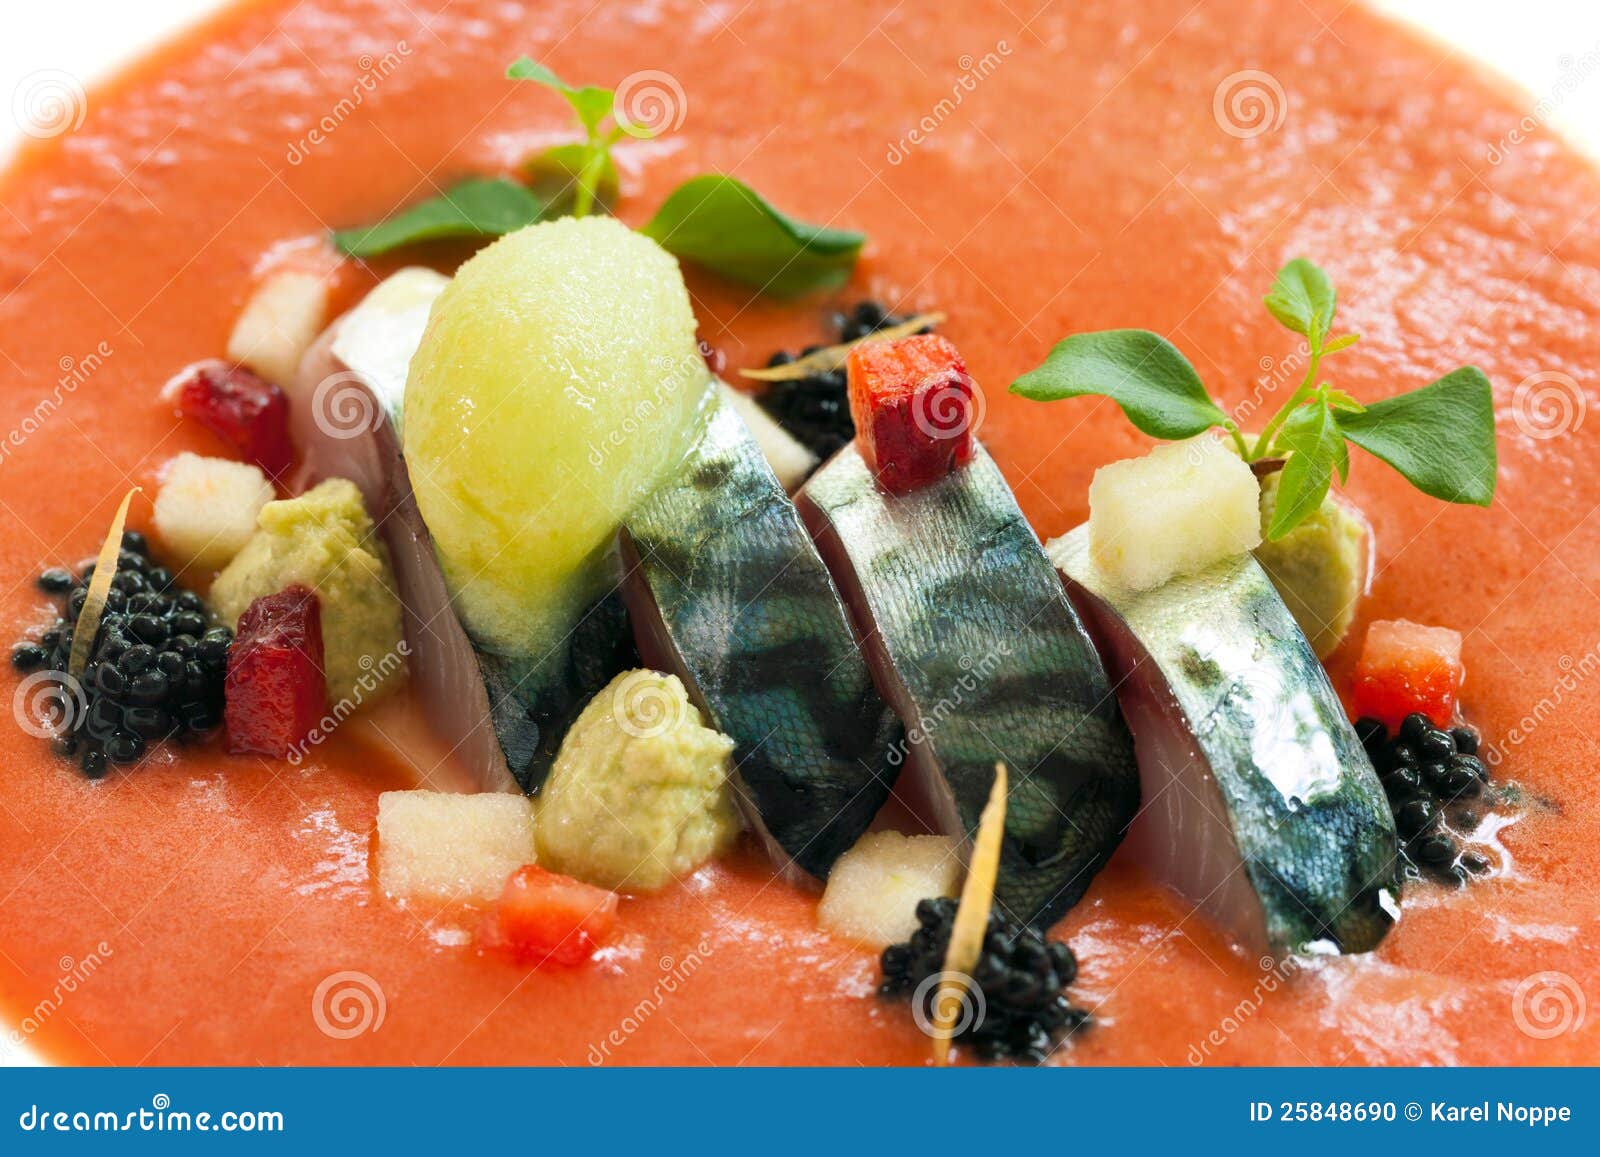 mackerel fish with orange seafood dressing.